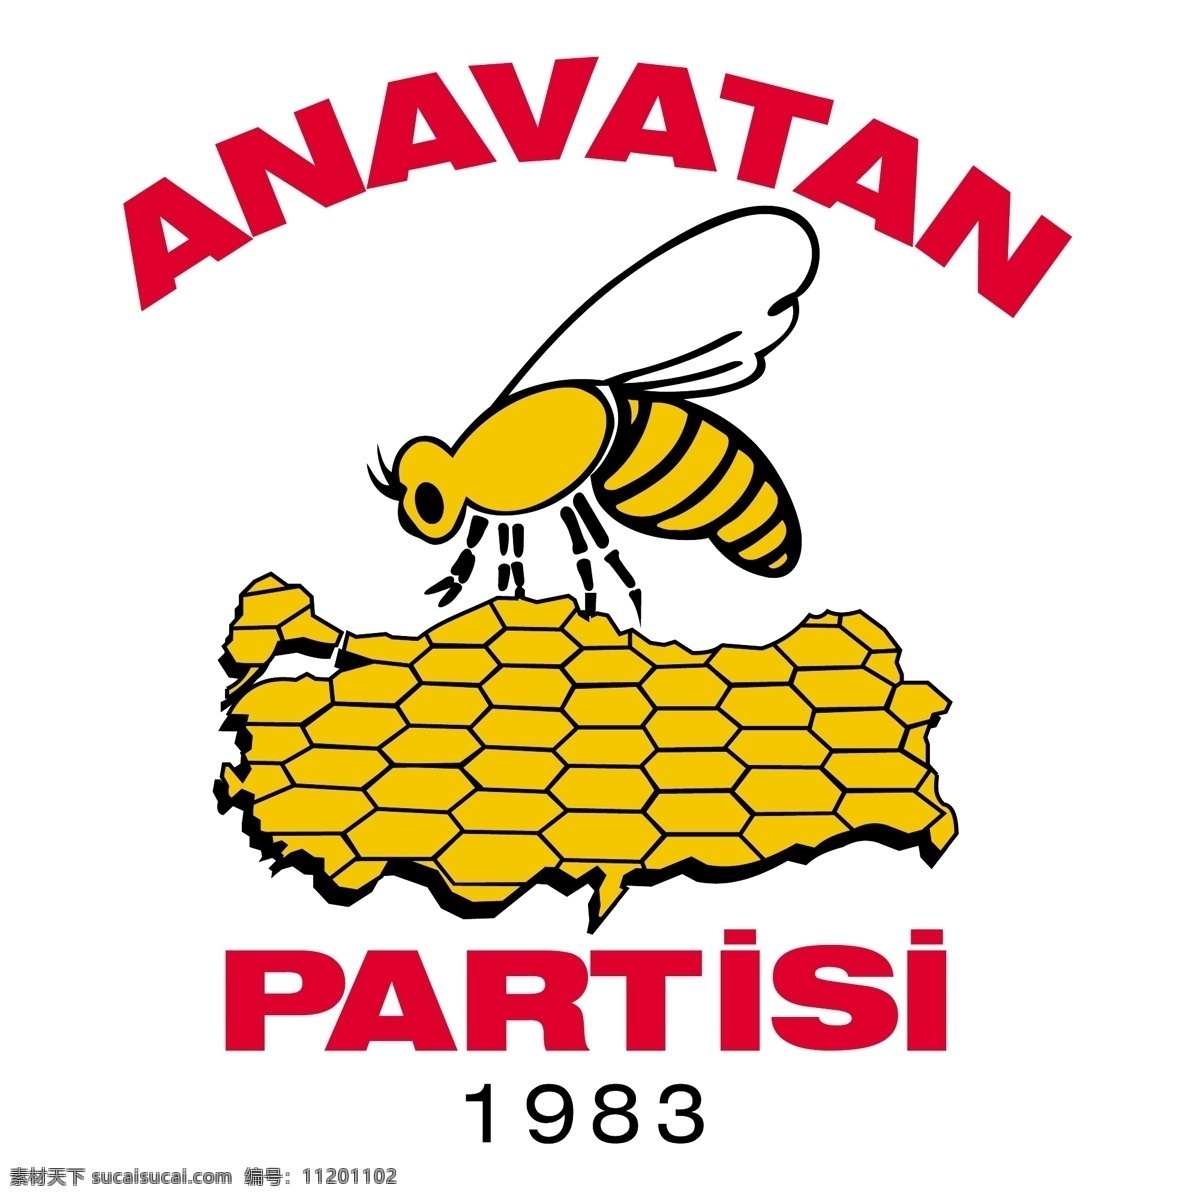 蜜蜂 logo 法国 艺术设计 黄蜂 矢量图 其他矢量图